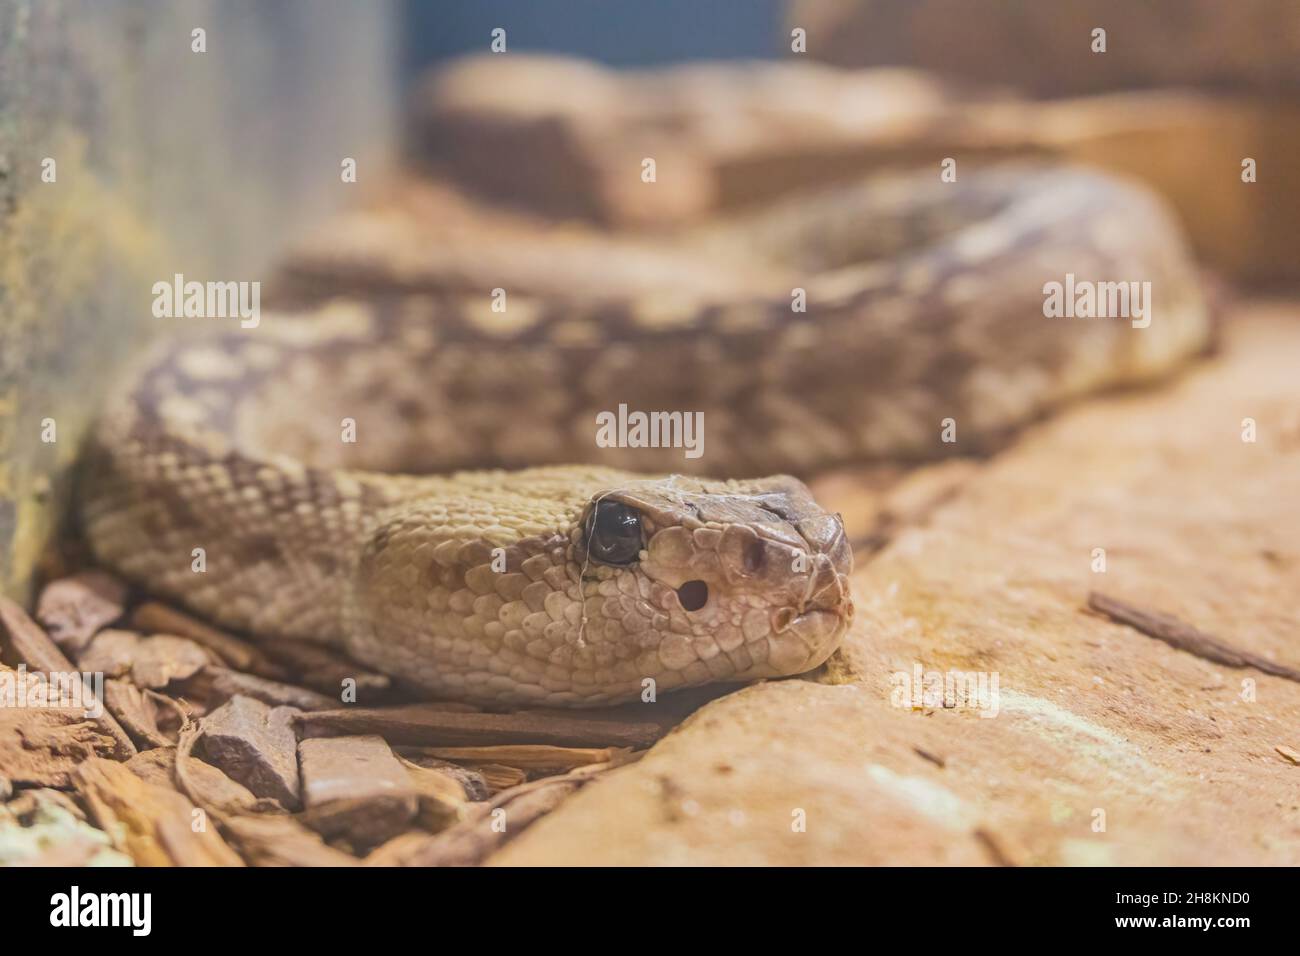 Close up shot of a Crotalus catalinensis snake at Oklahoma Stock Photo